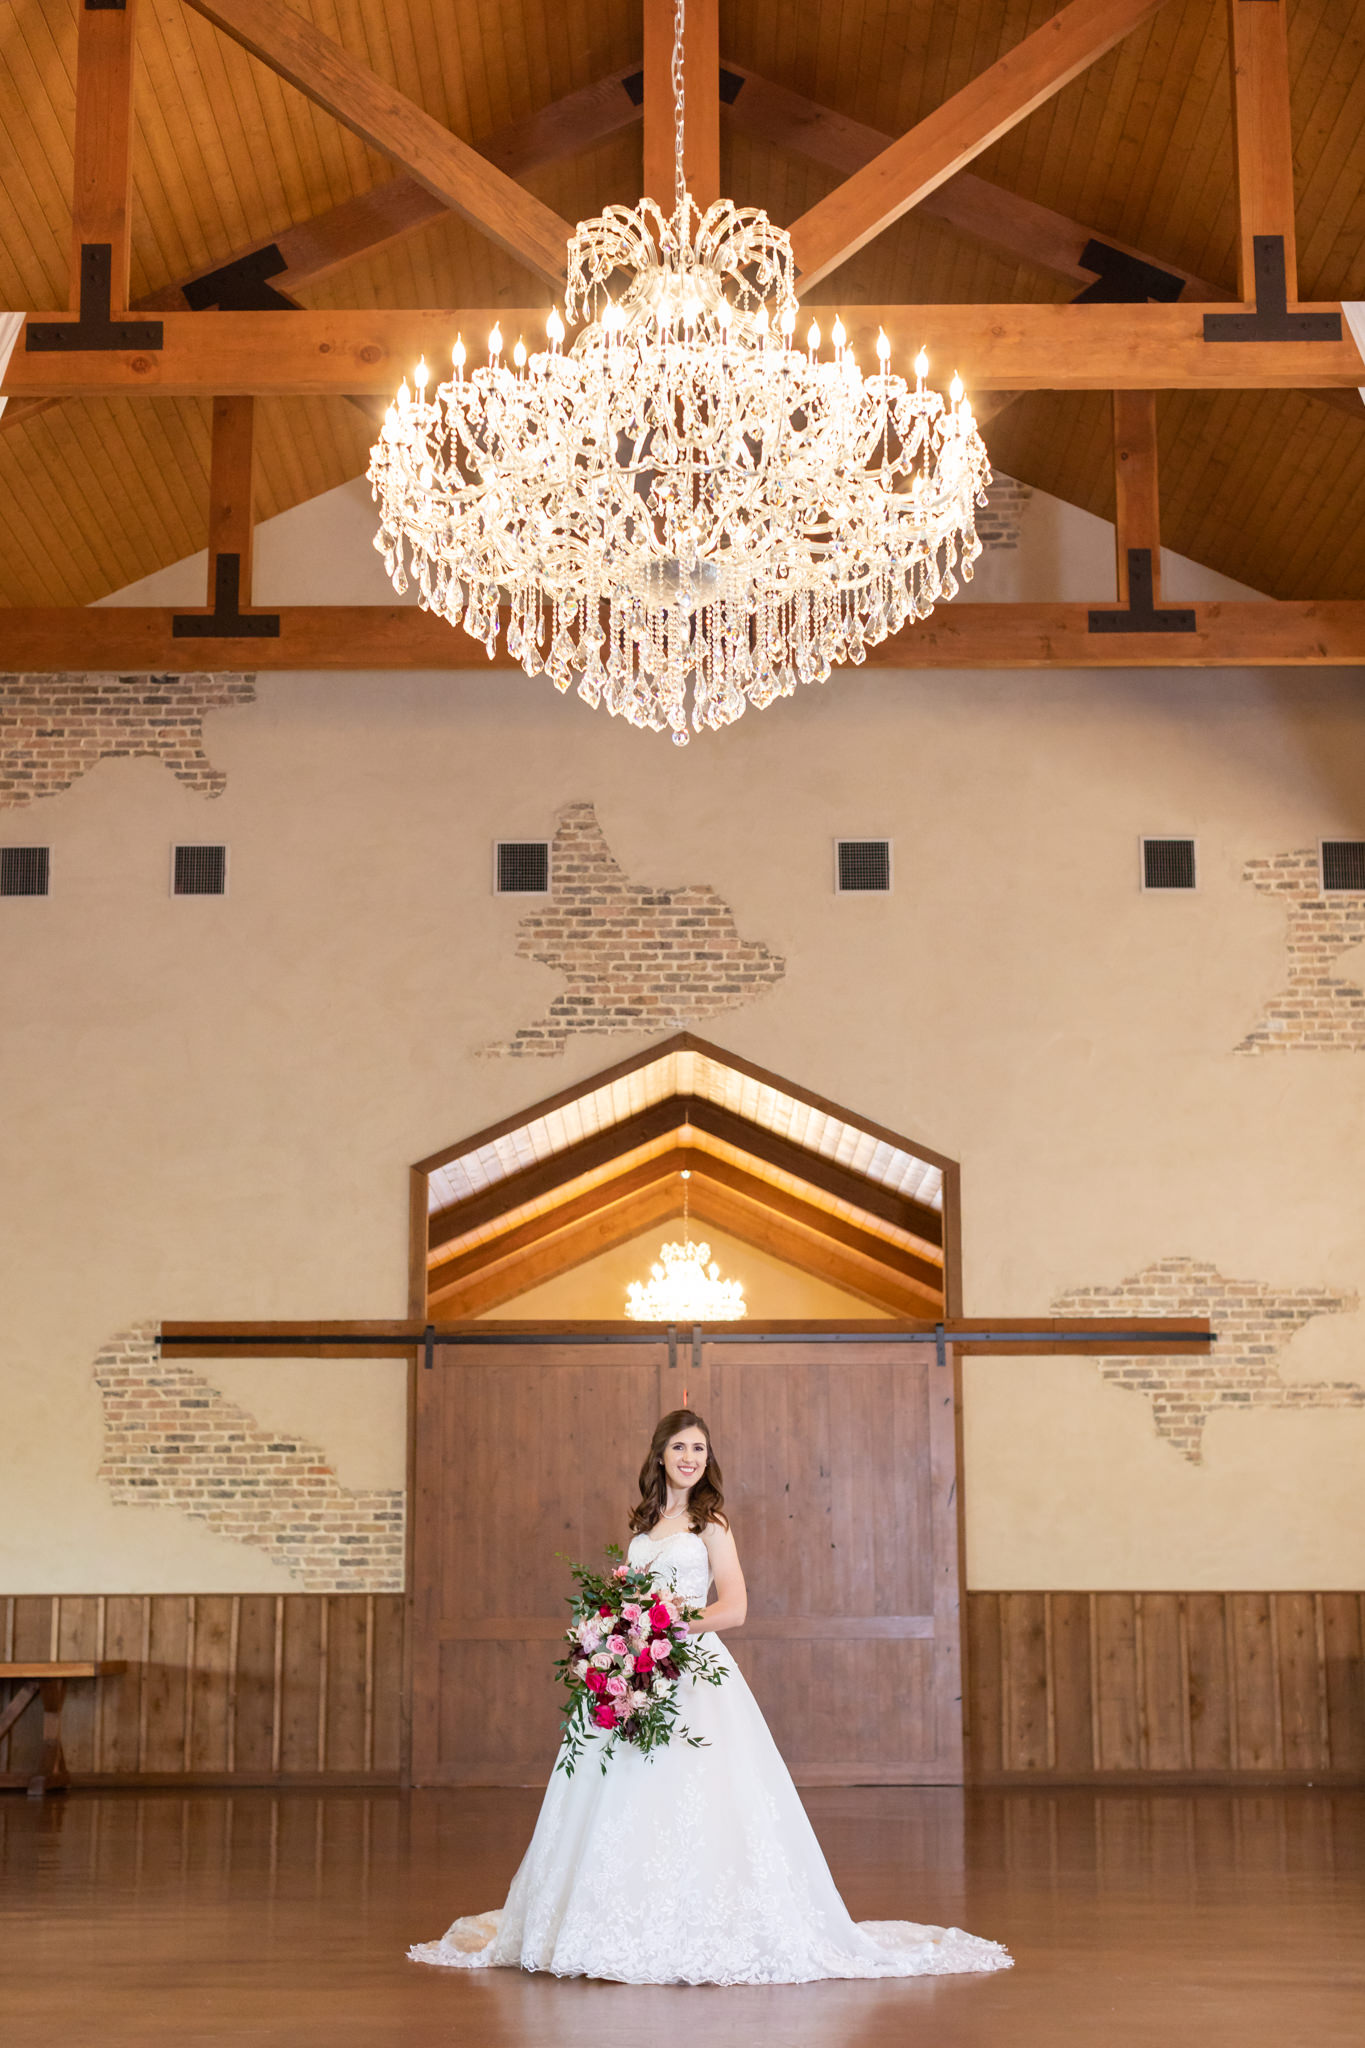 A Classic Bridal Session at Chandelier of Gruene in New Braunfels, TX by Dawn Elizabeth Studios, New Braunfels Wedding Photographer